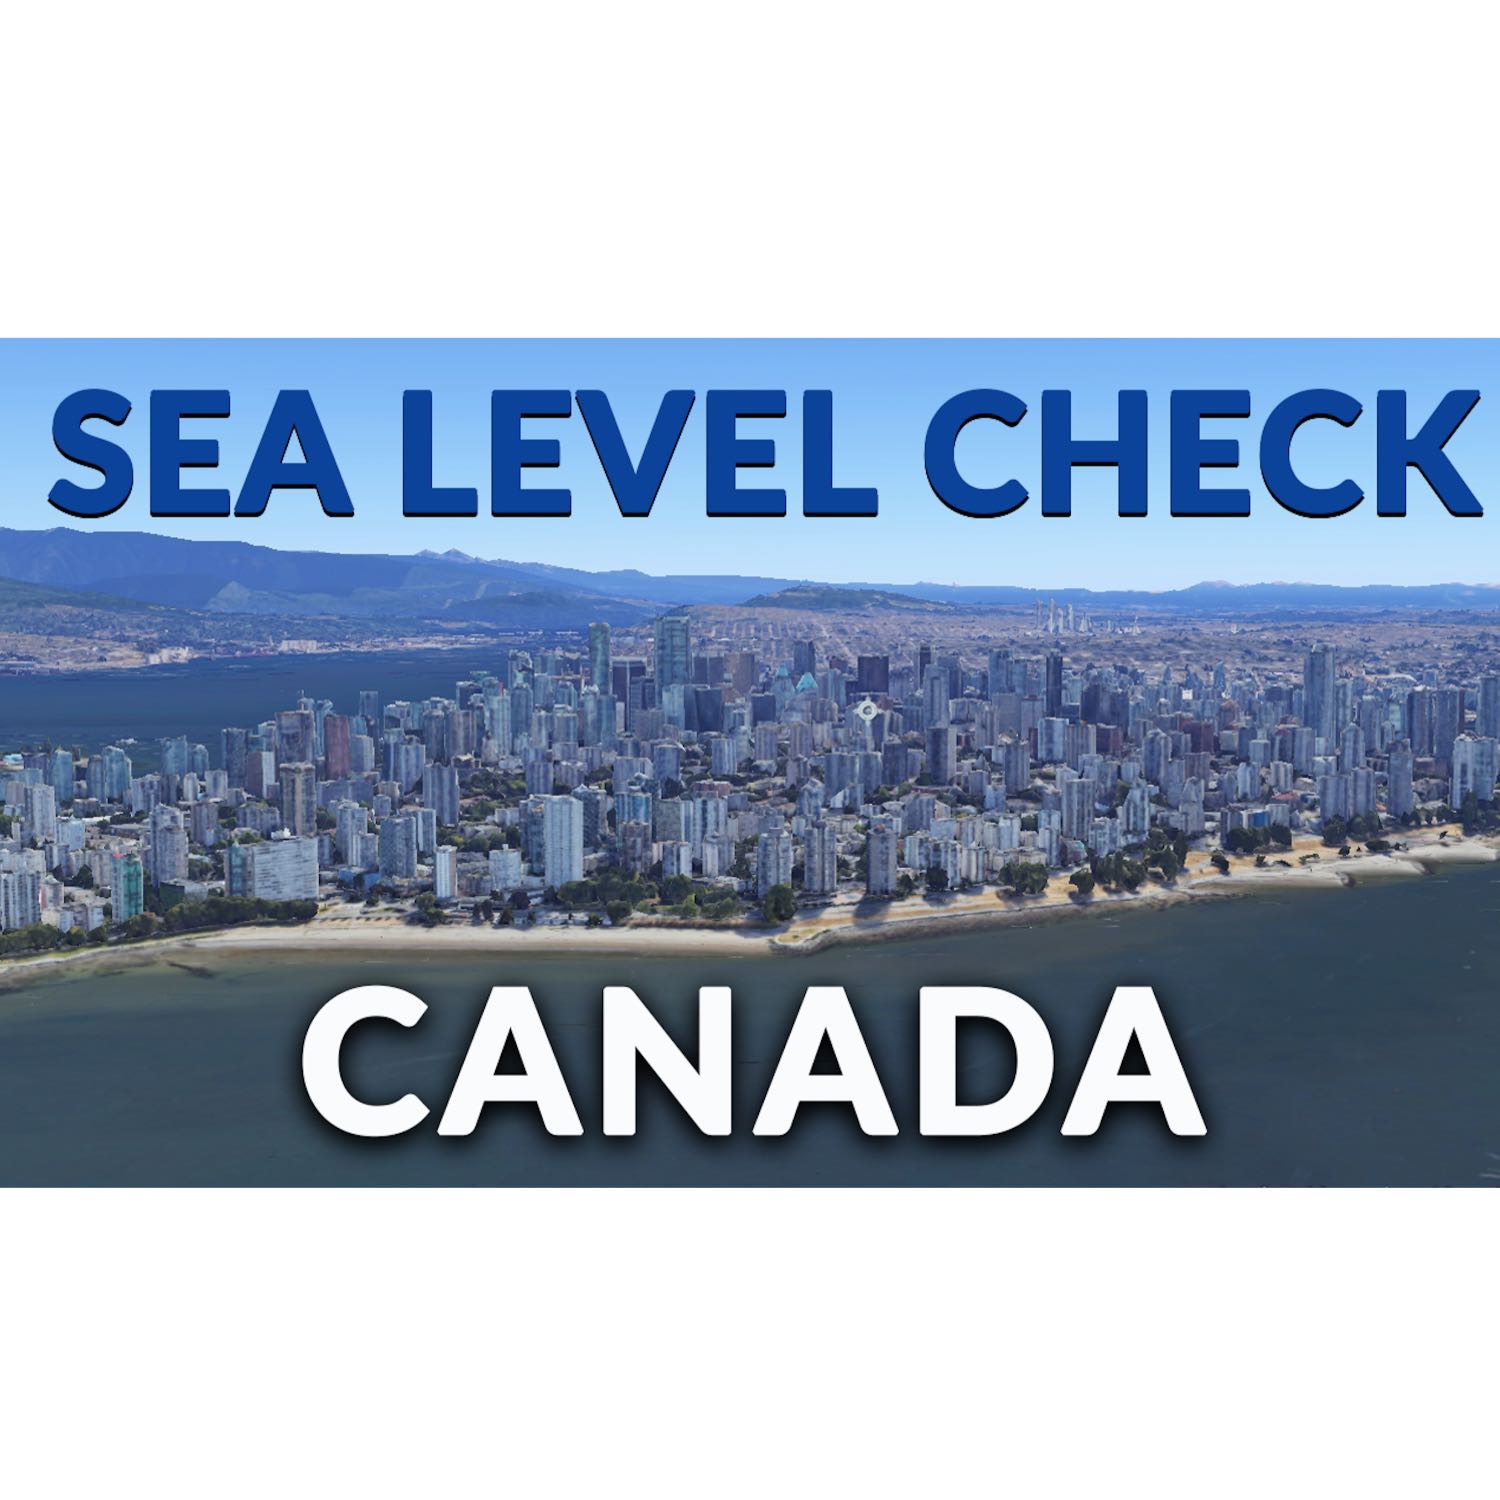 Sea Level Check - Canada (Part I)